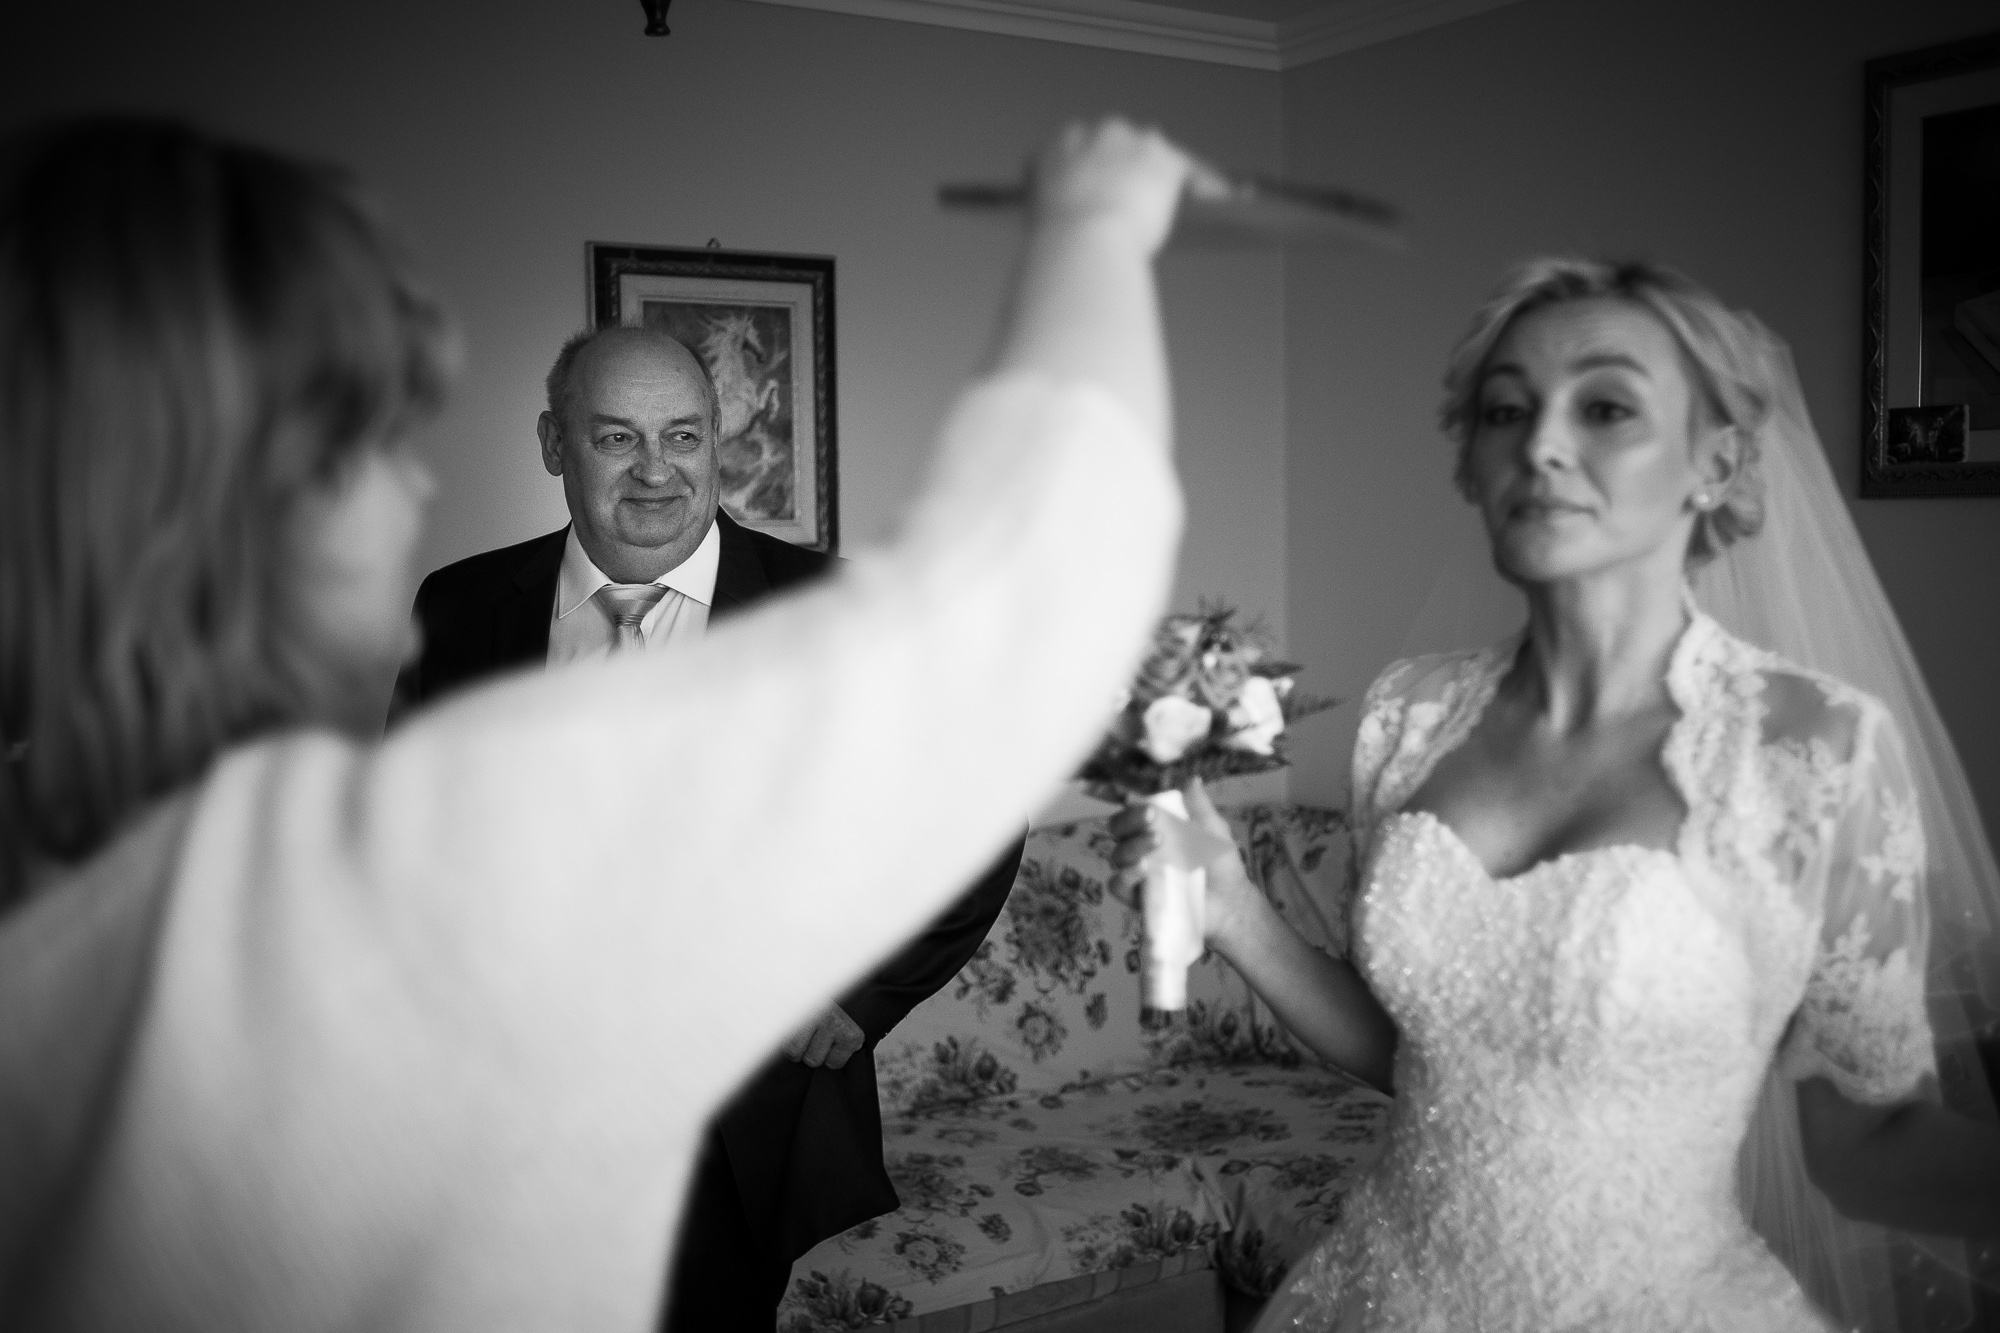 Emocjonalne, wzruszające, intymne momenty podczas przygotowań do ślubu